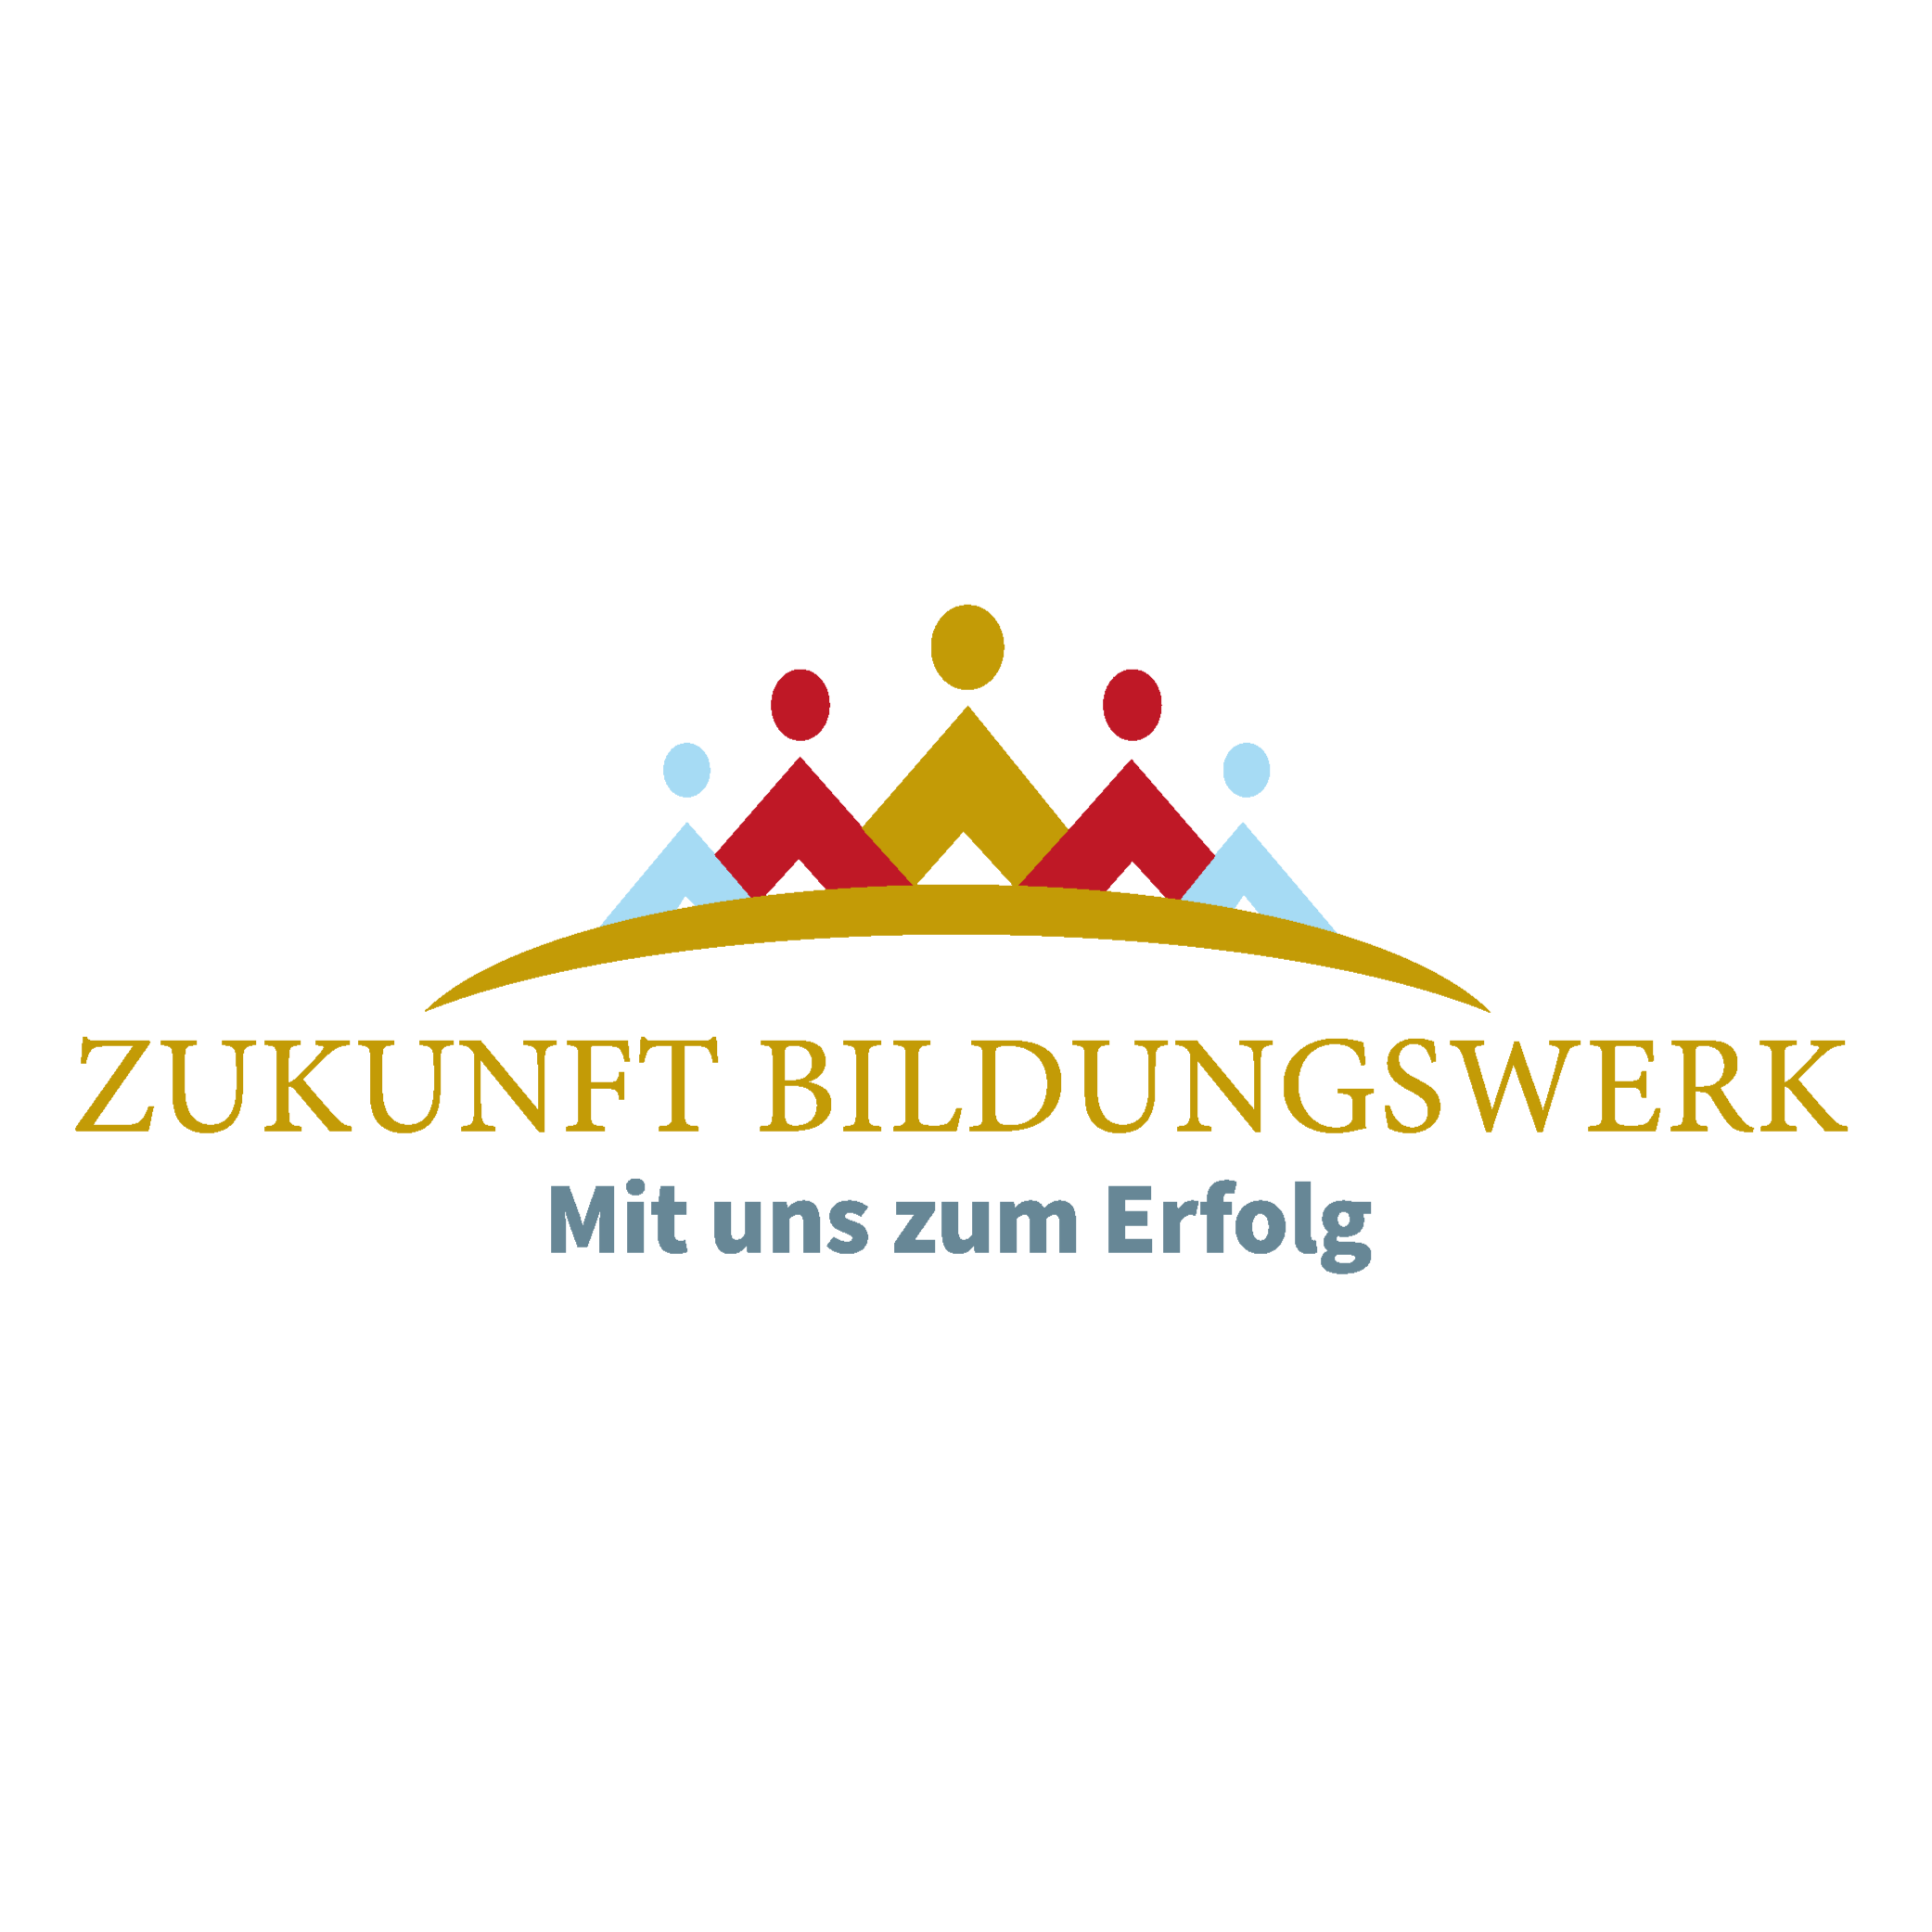 Zukunft Bildungswerk in Essen - Logo